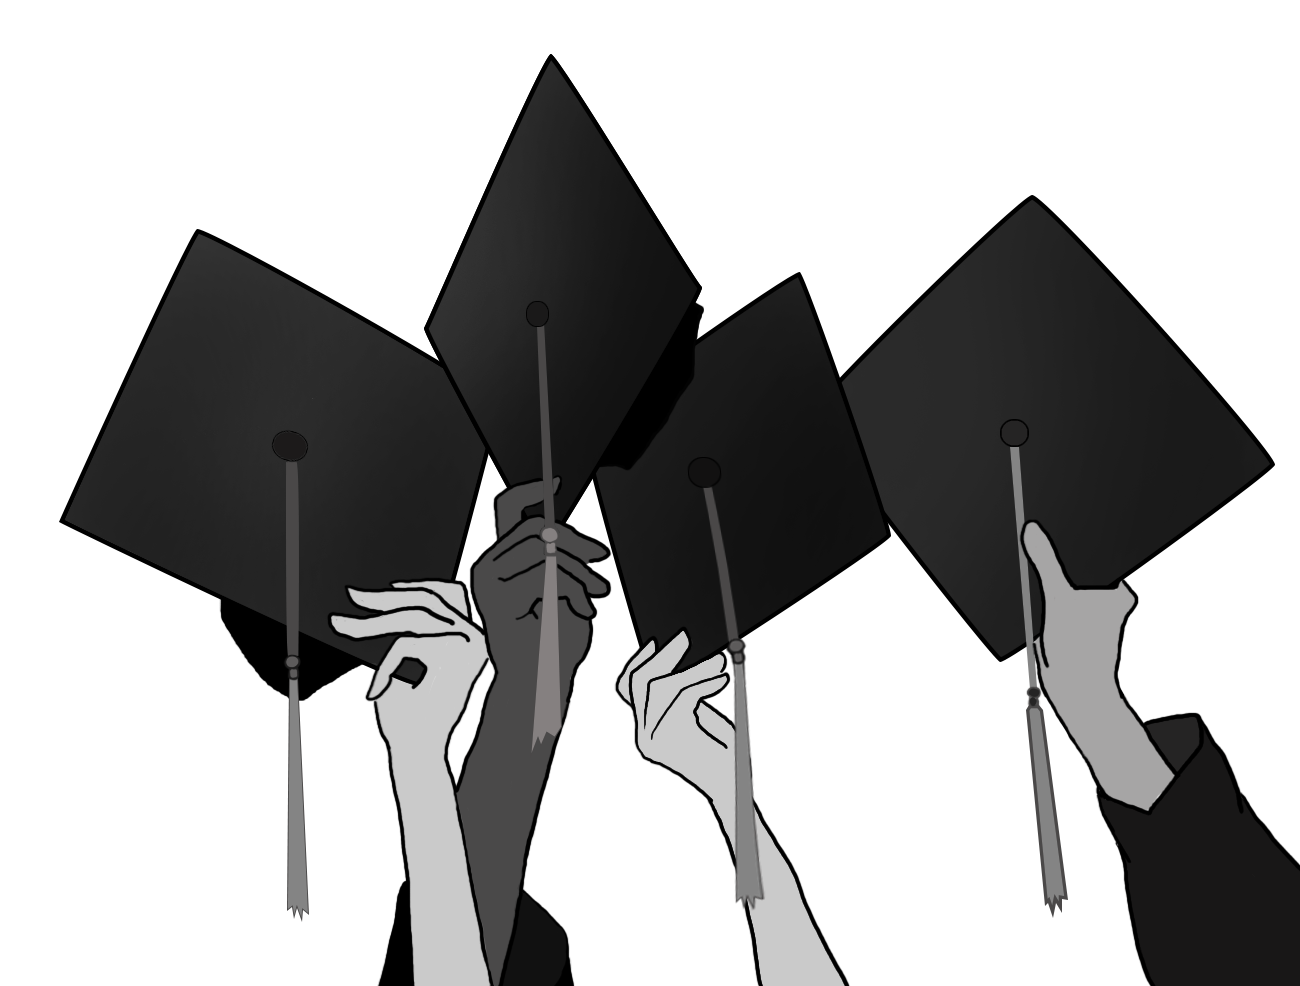 graduation caps in hands